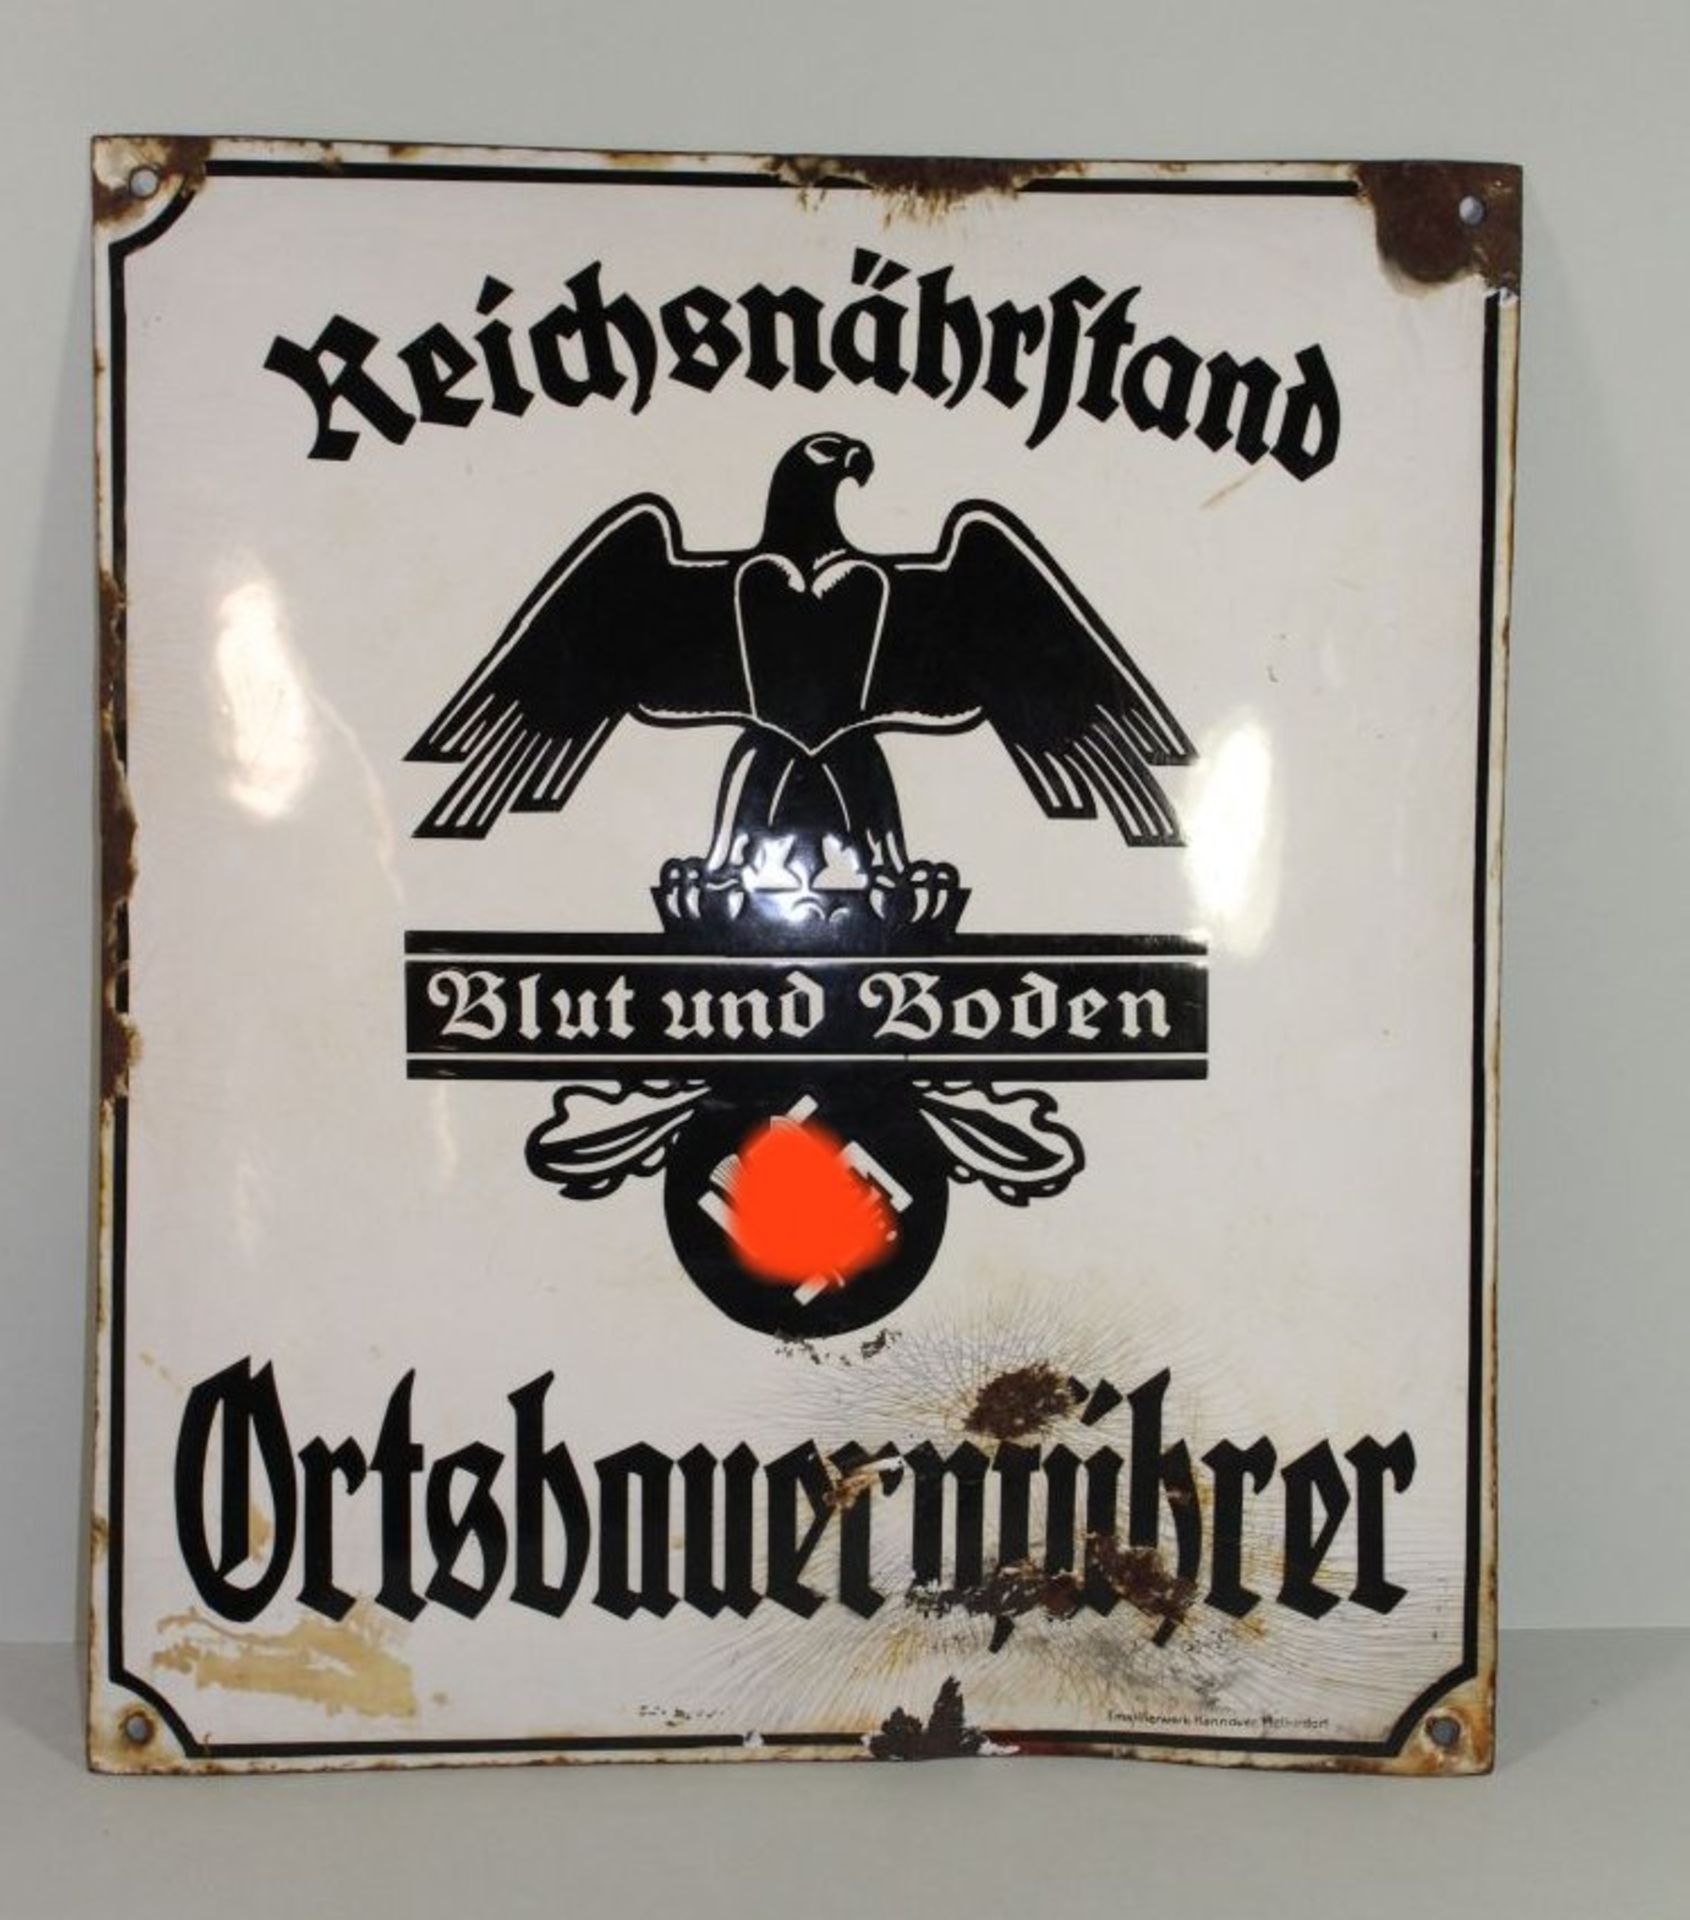 Emaille-Schild "Reichsnährstand", Ortsbauernführer, 3. Reich, Emaille beschlagen, Altersspuren, 40 x